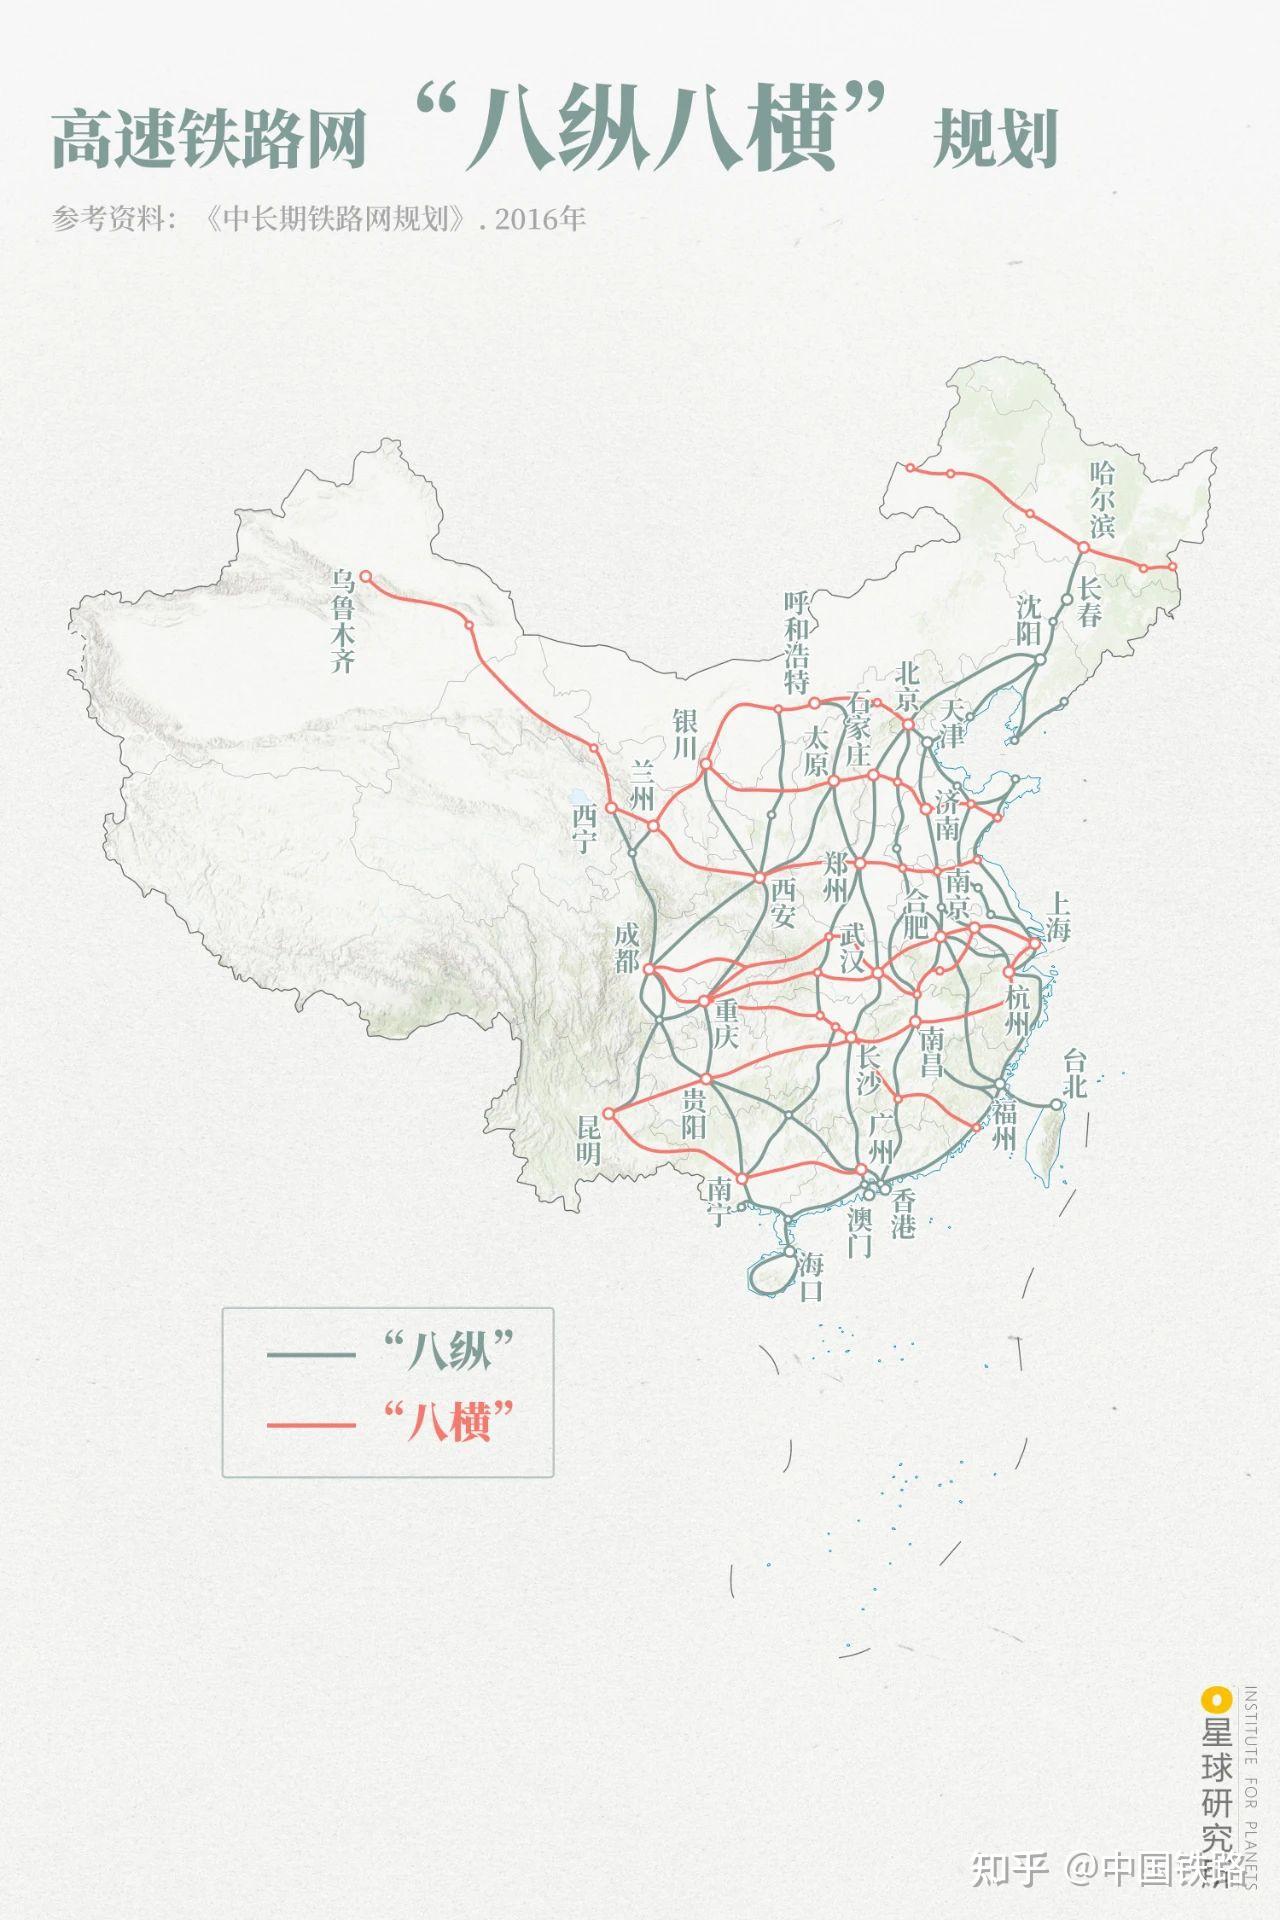 国家高铁网规划图 2020图片